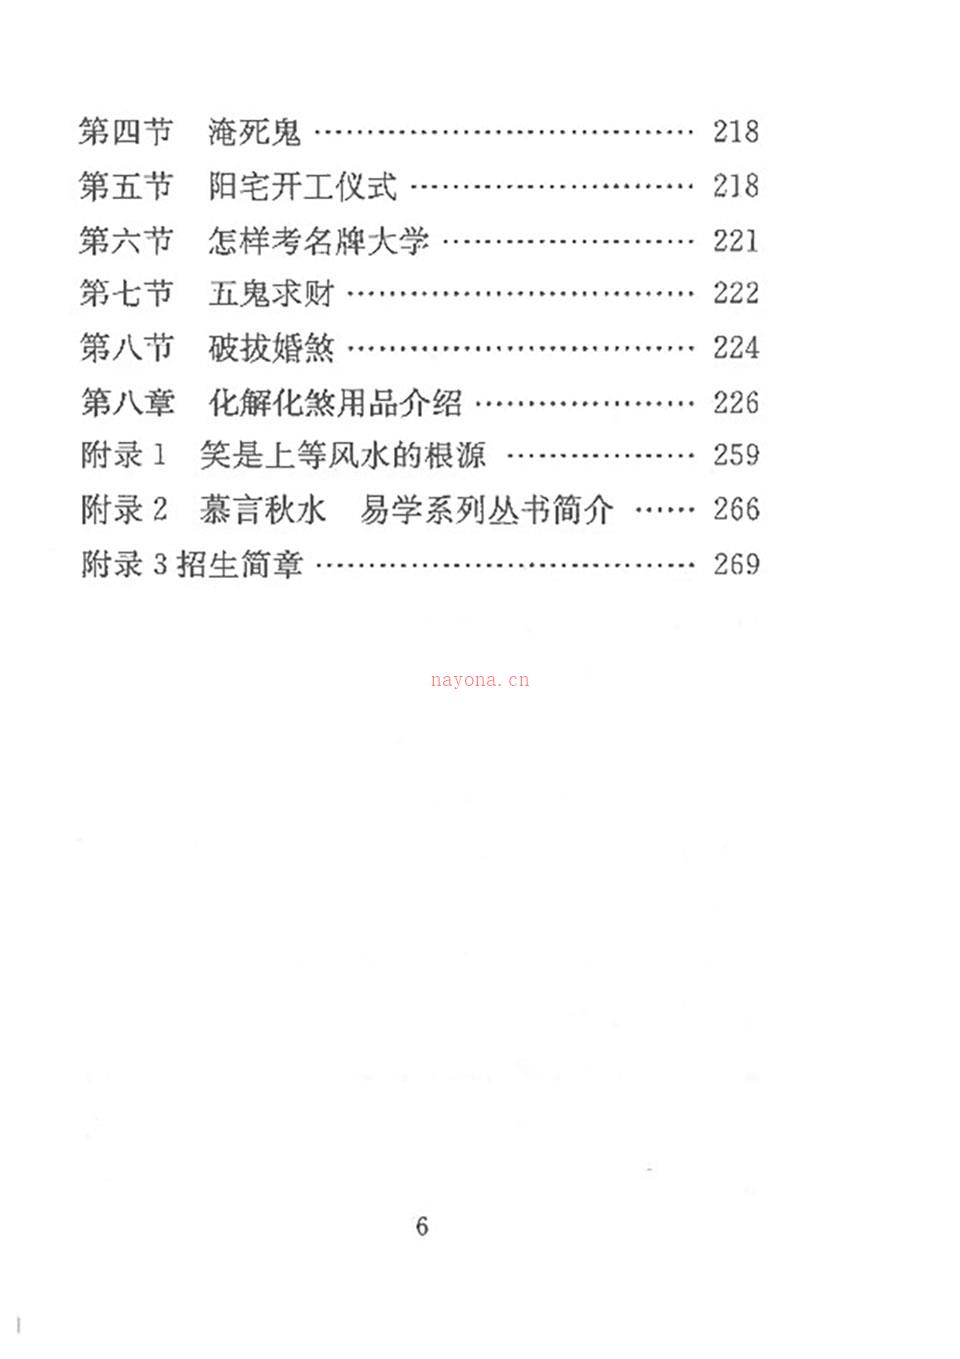 风水化解大全秘籍完整.pdf 百度网盘资源